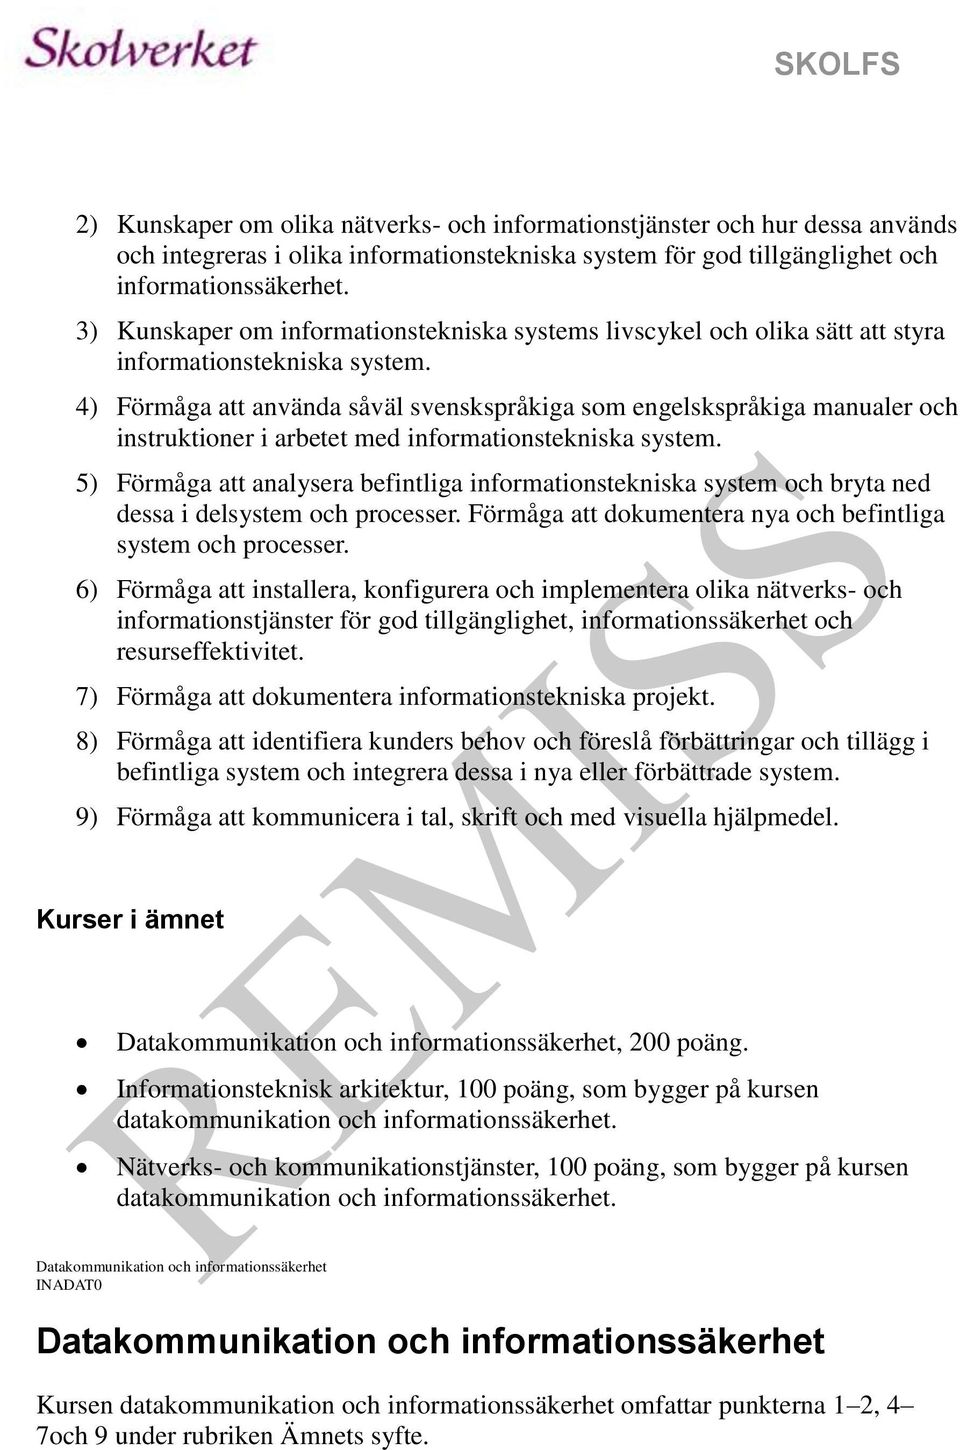 4) Förmåga att använda såväl svenskspråkiga som engelskspråkiga manualer och instruktioner i arbetet med informationstekniska system.